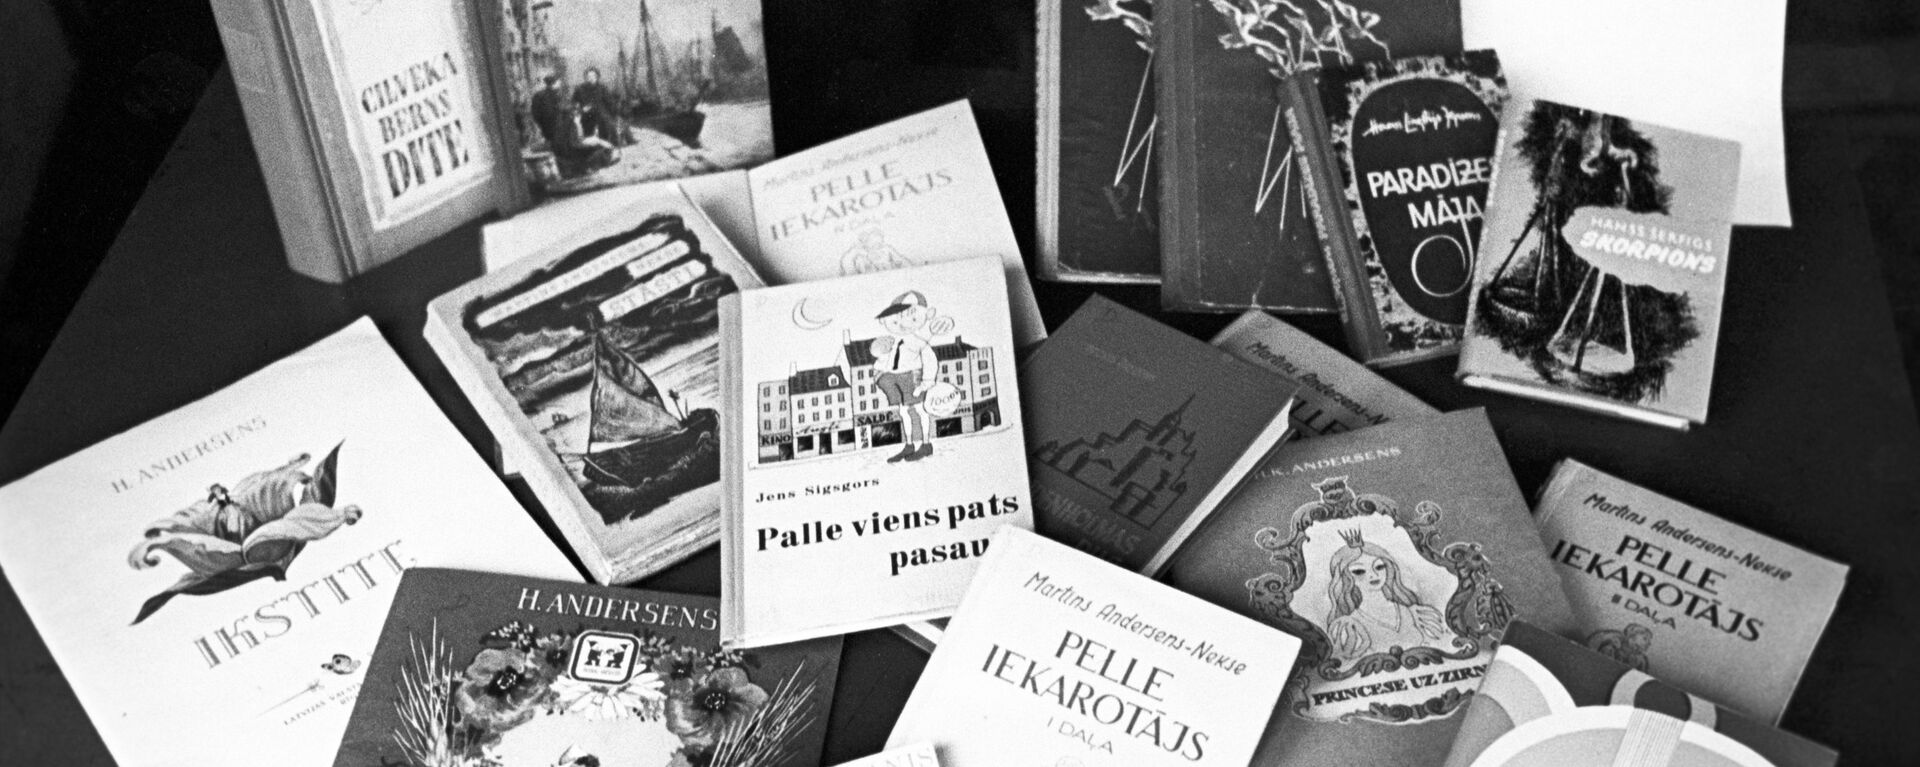 Книги, переведенные на латышский язык. Архивное фото - Sputnik Латвия, 1920, 07.03.2021